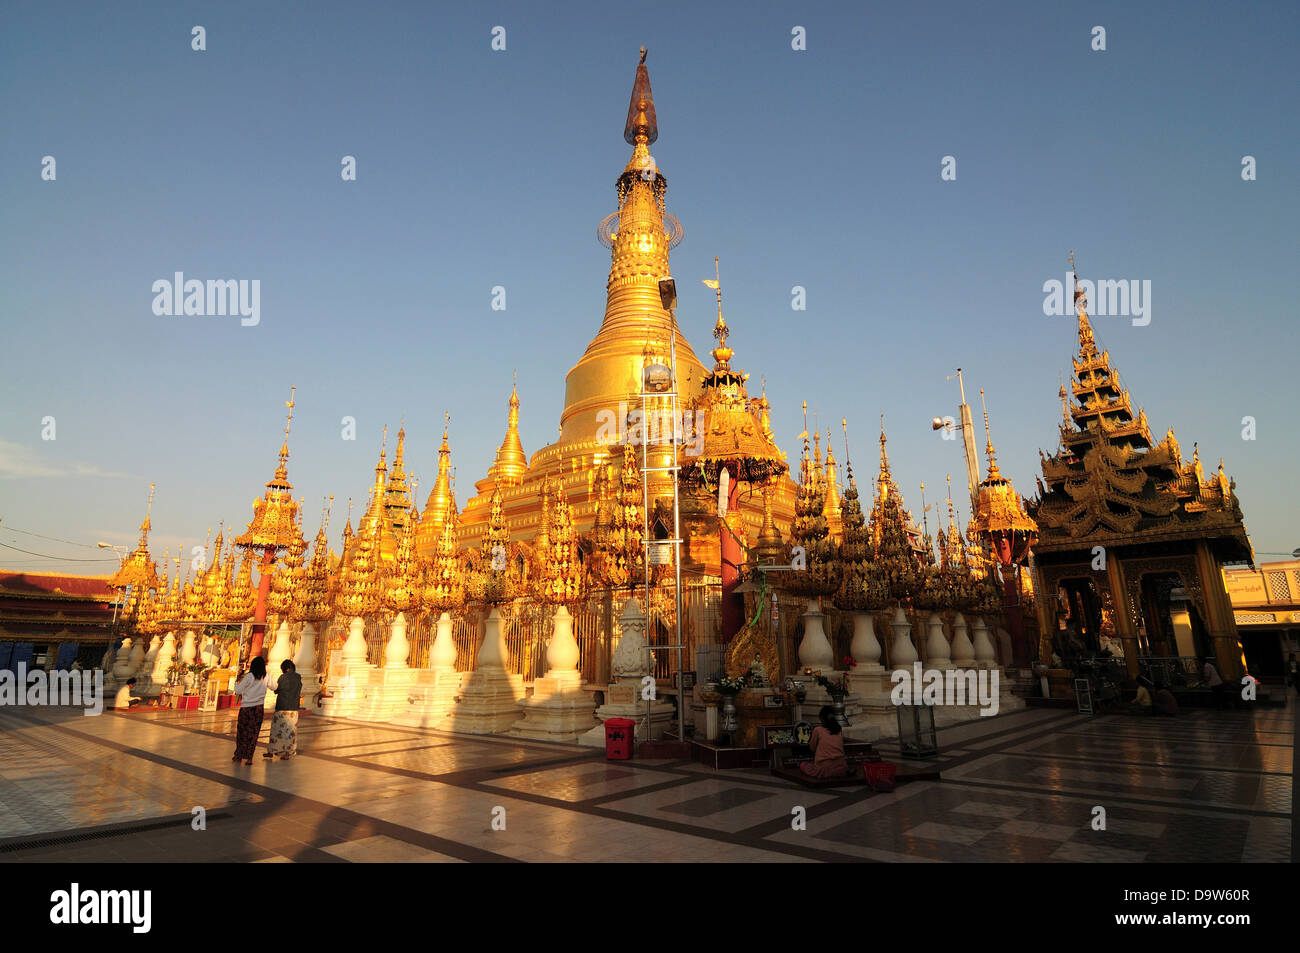 Shwesandaw Pagoda Pyay Bago Region Myanmar Stock Photo Alamy